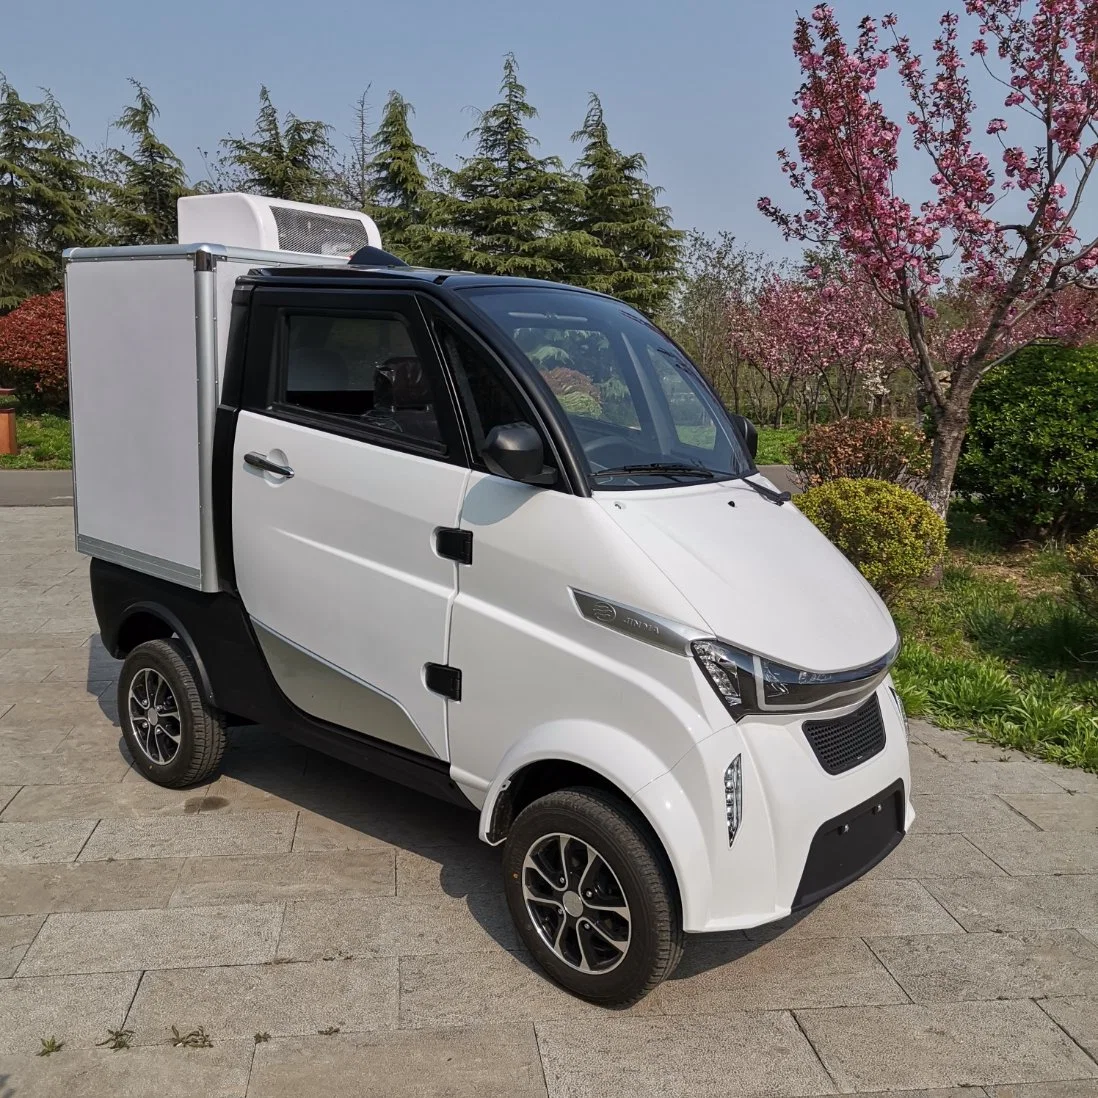 Carretillas eléctricas chinas camioneta de carga eléctrica de 4 ruedas coche eléctrico con la CEE Certificación sin permiso de conducir